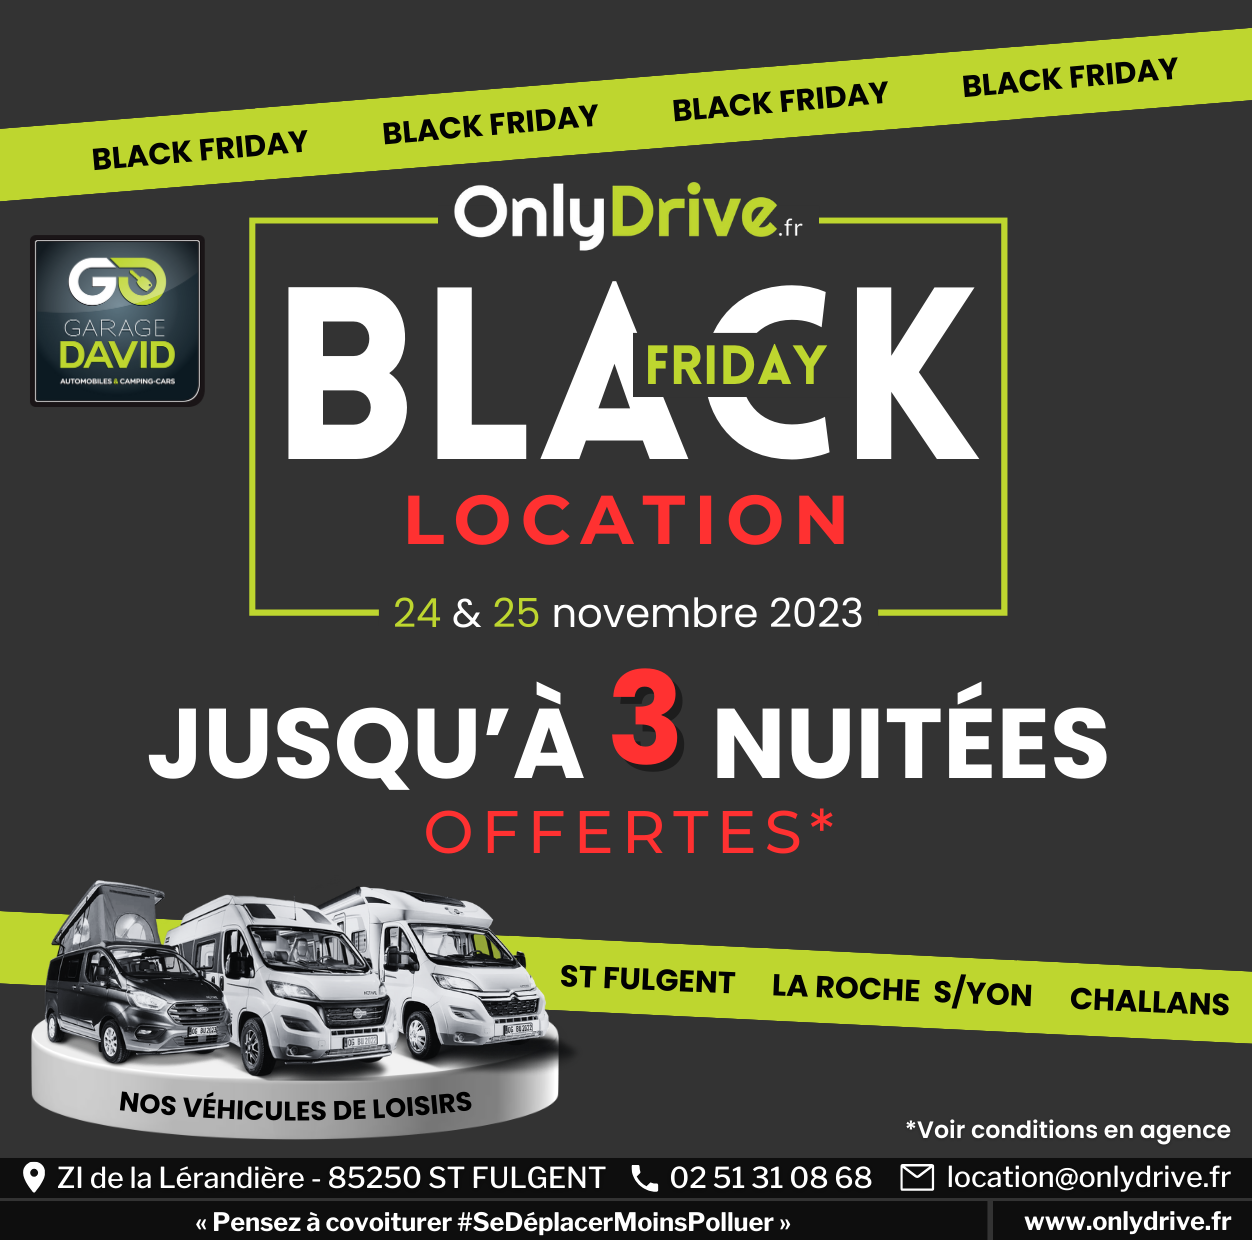 Black Friday les 24 et 25 novembre 2023 au Garage David Onlydrive à Saint Fulgent en Vendée, profitez d'offres exclusives jusqu'à 3 nuitées offertes pour toute location de véhicules de loisirs* !